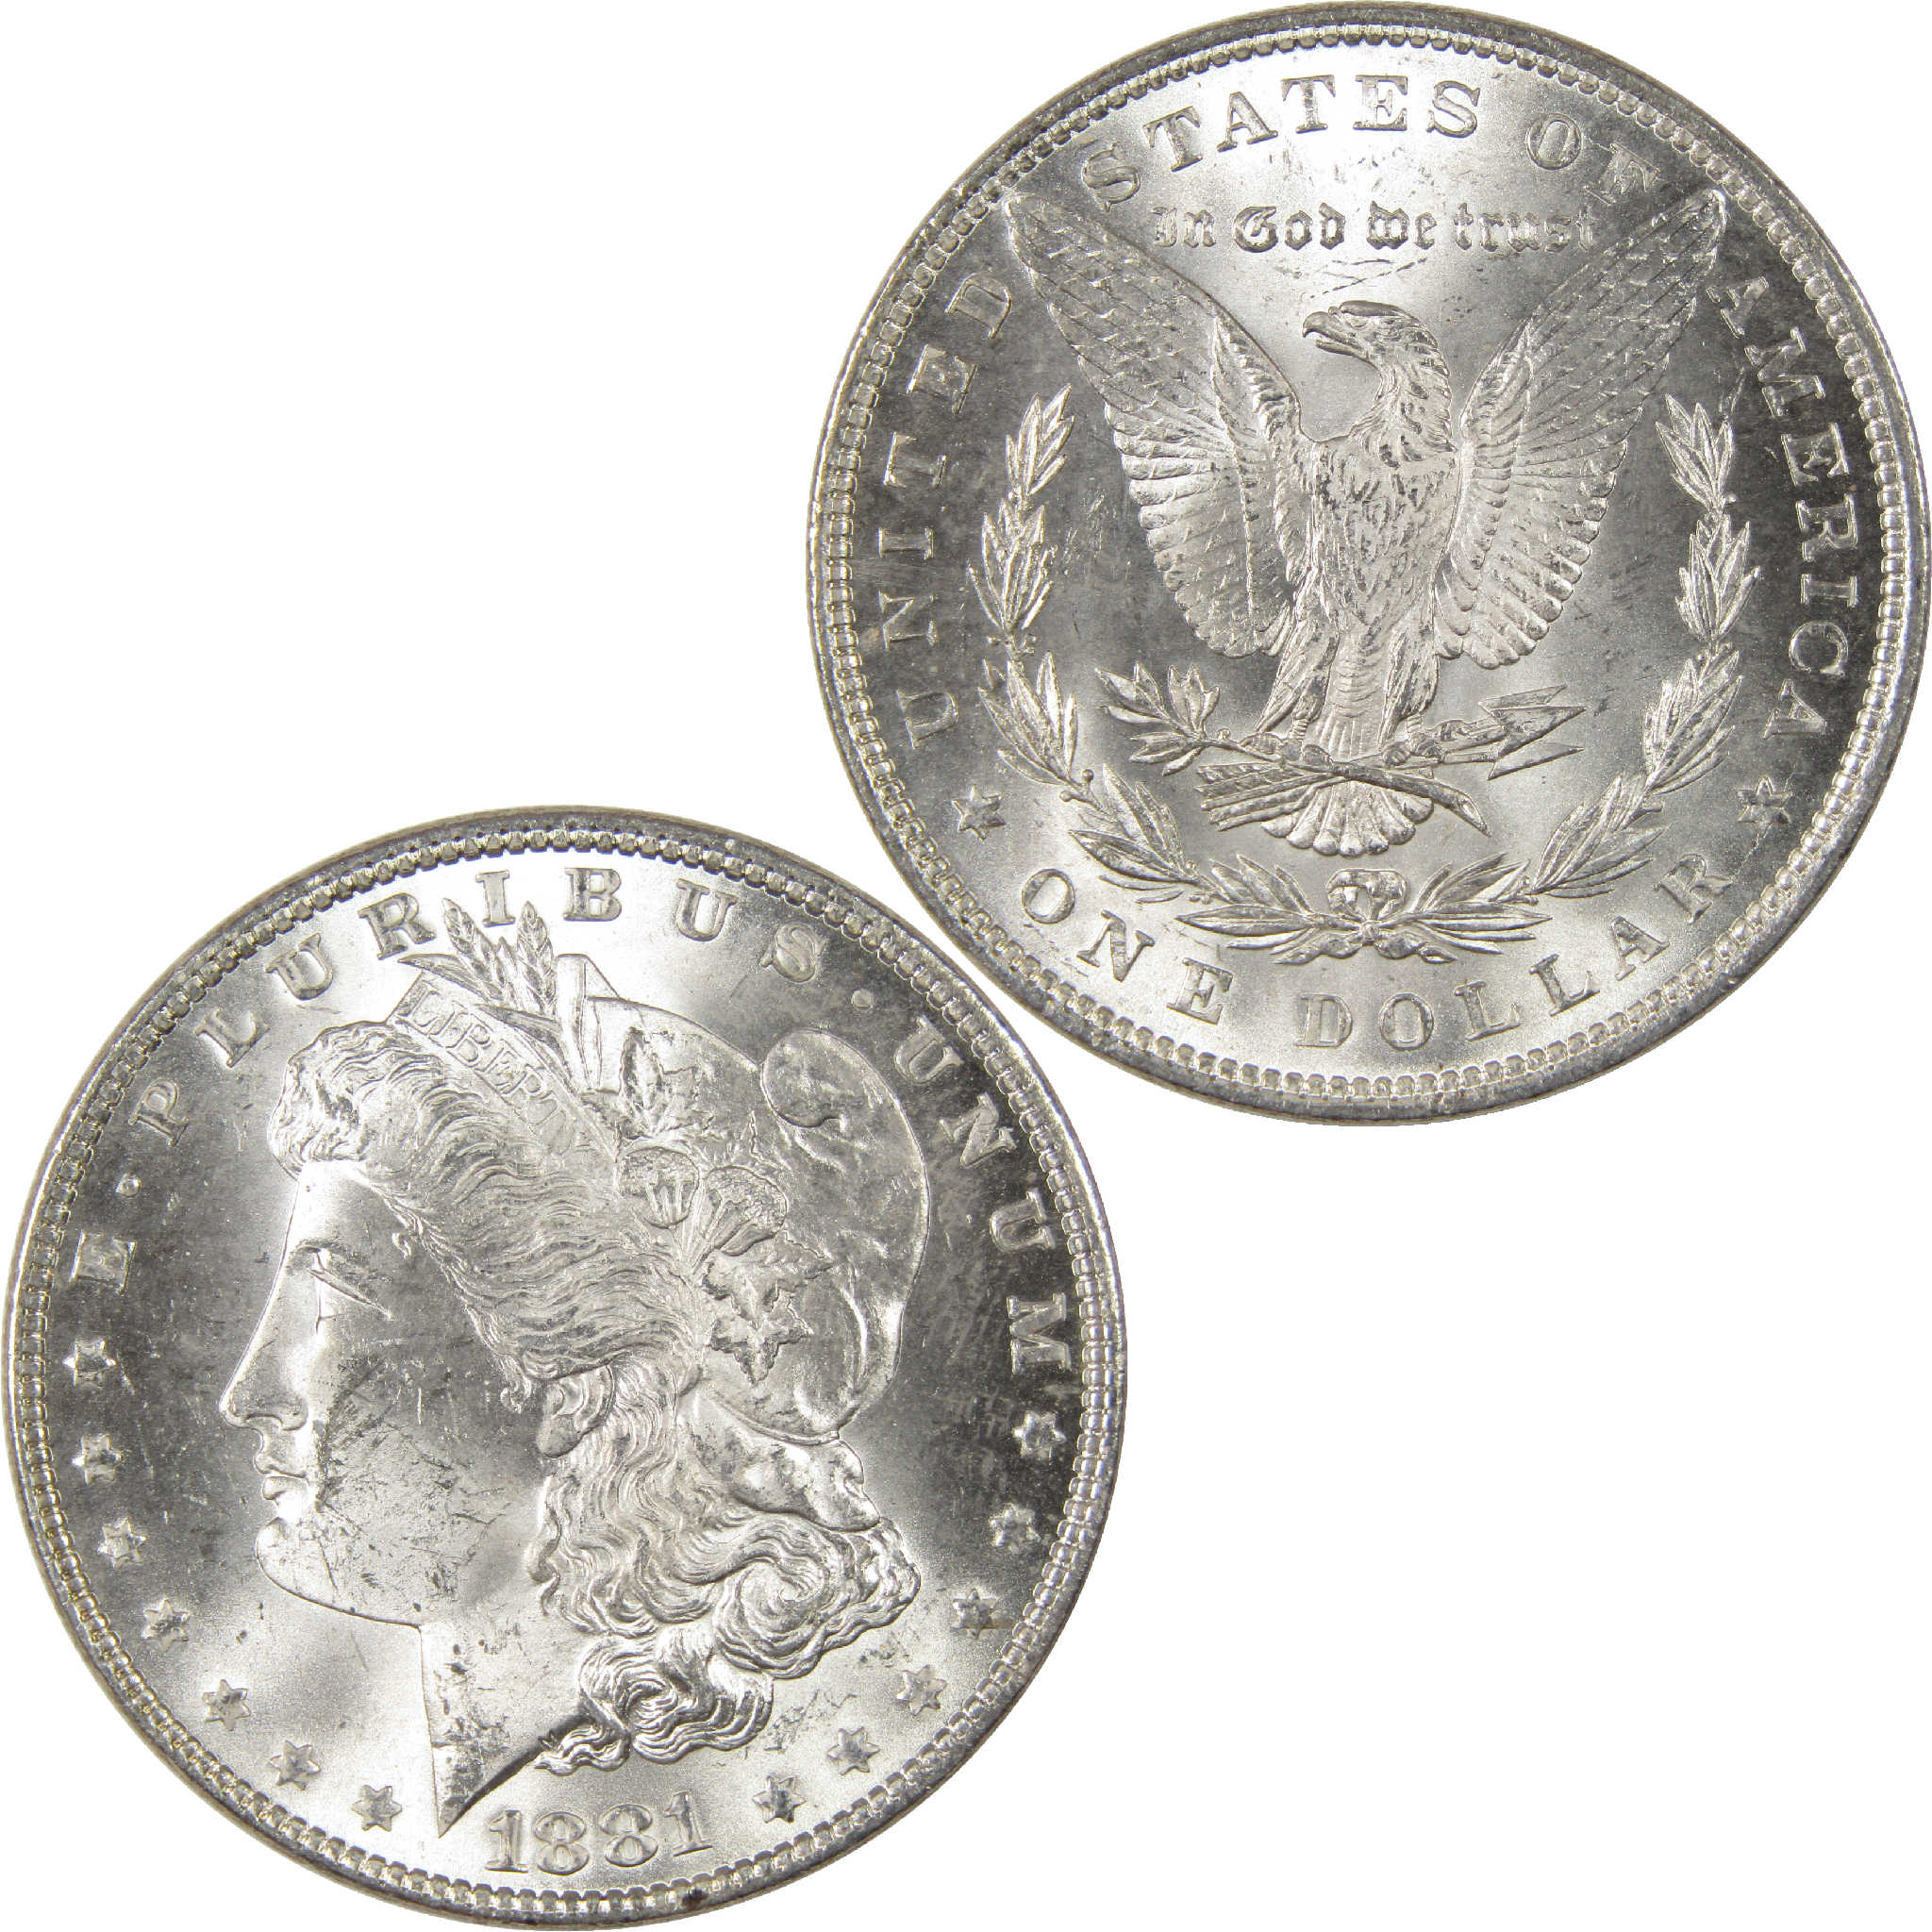 1881 Morgan Dollar Uncirculated Silver $1 Coin - Morgan coin - Morgan silver dollar - Morgan silver dollar for sale - Profile Coins &amp; Collectibles